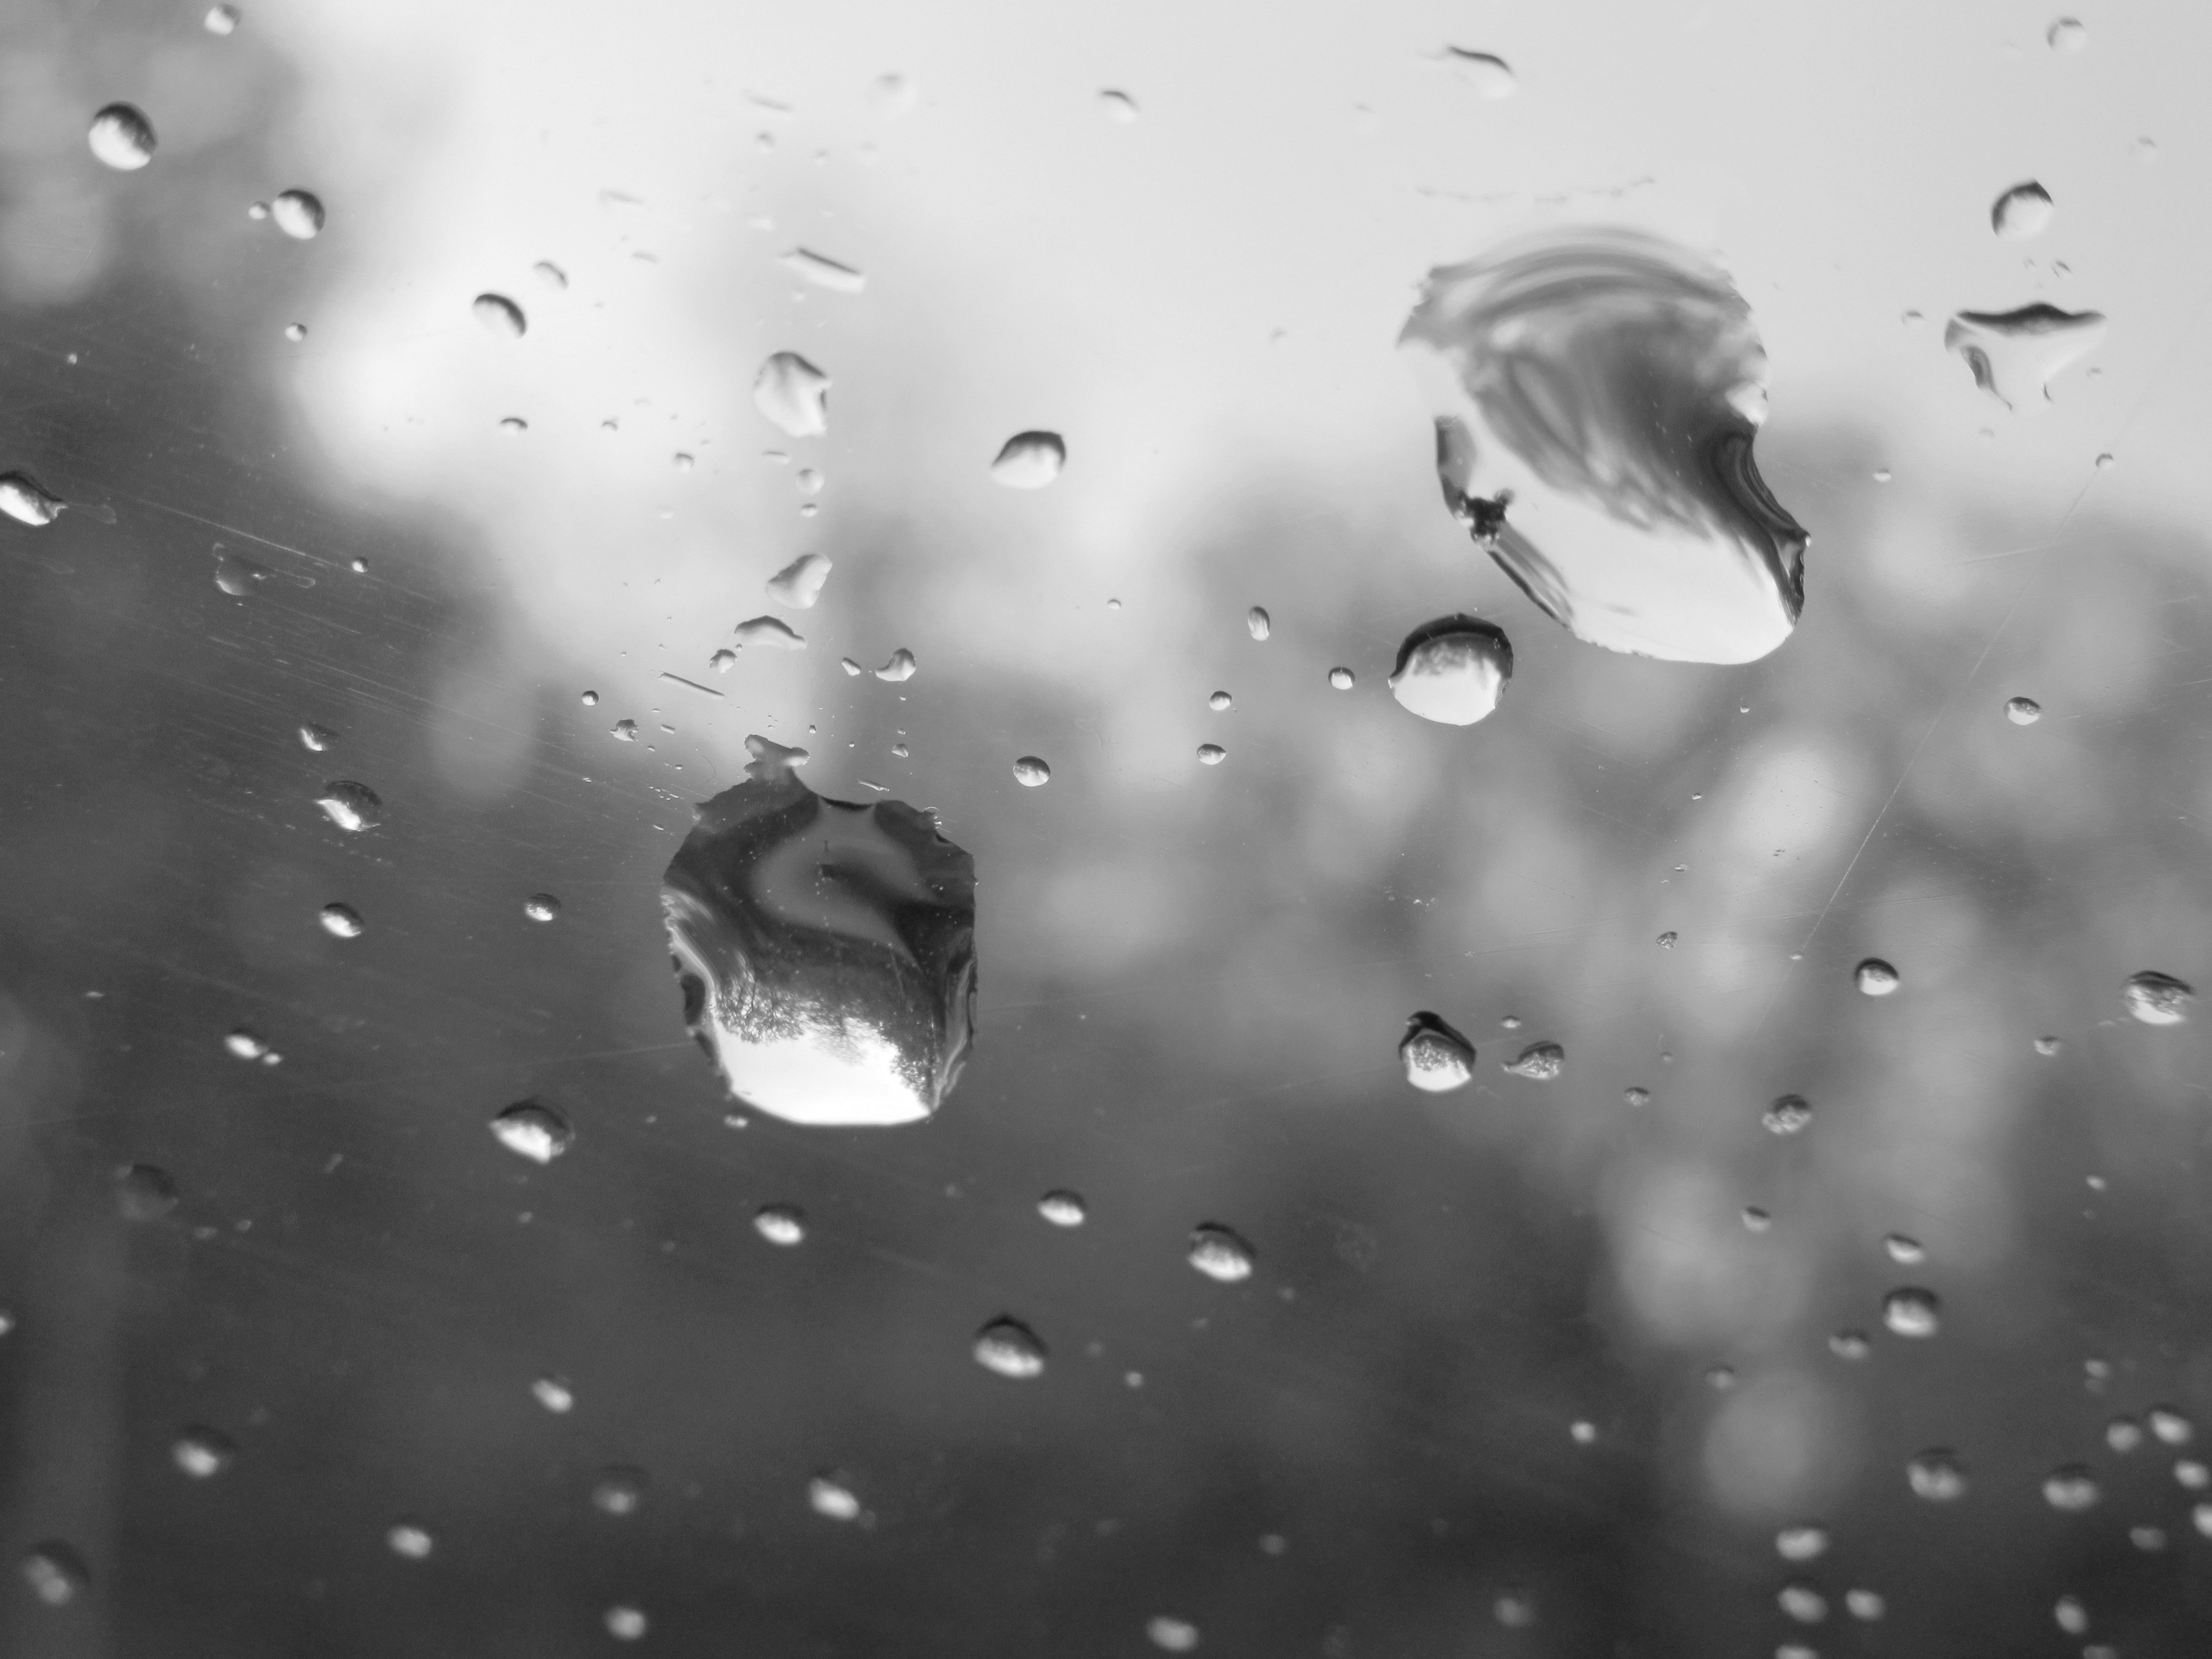 Едва заметно будто капли воды. Капли на стекле. Падающие капли воды. Капли дождя на стекле. Капли падают.